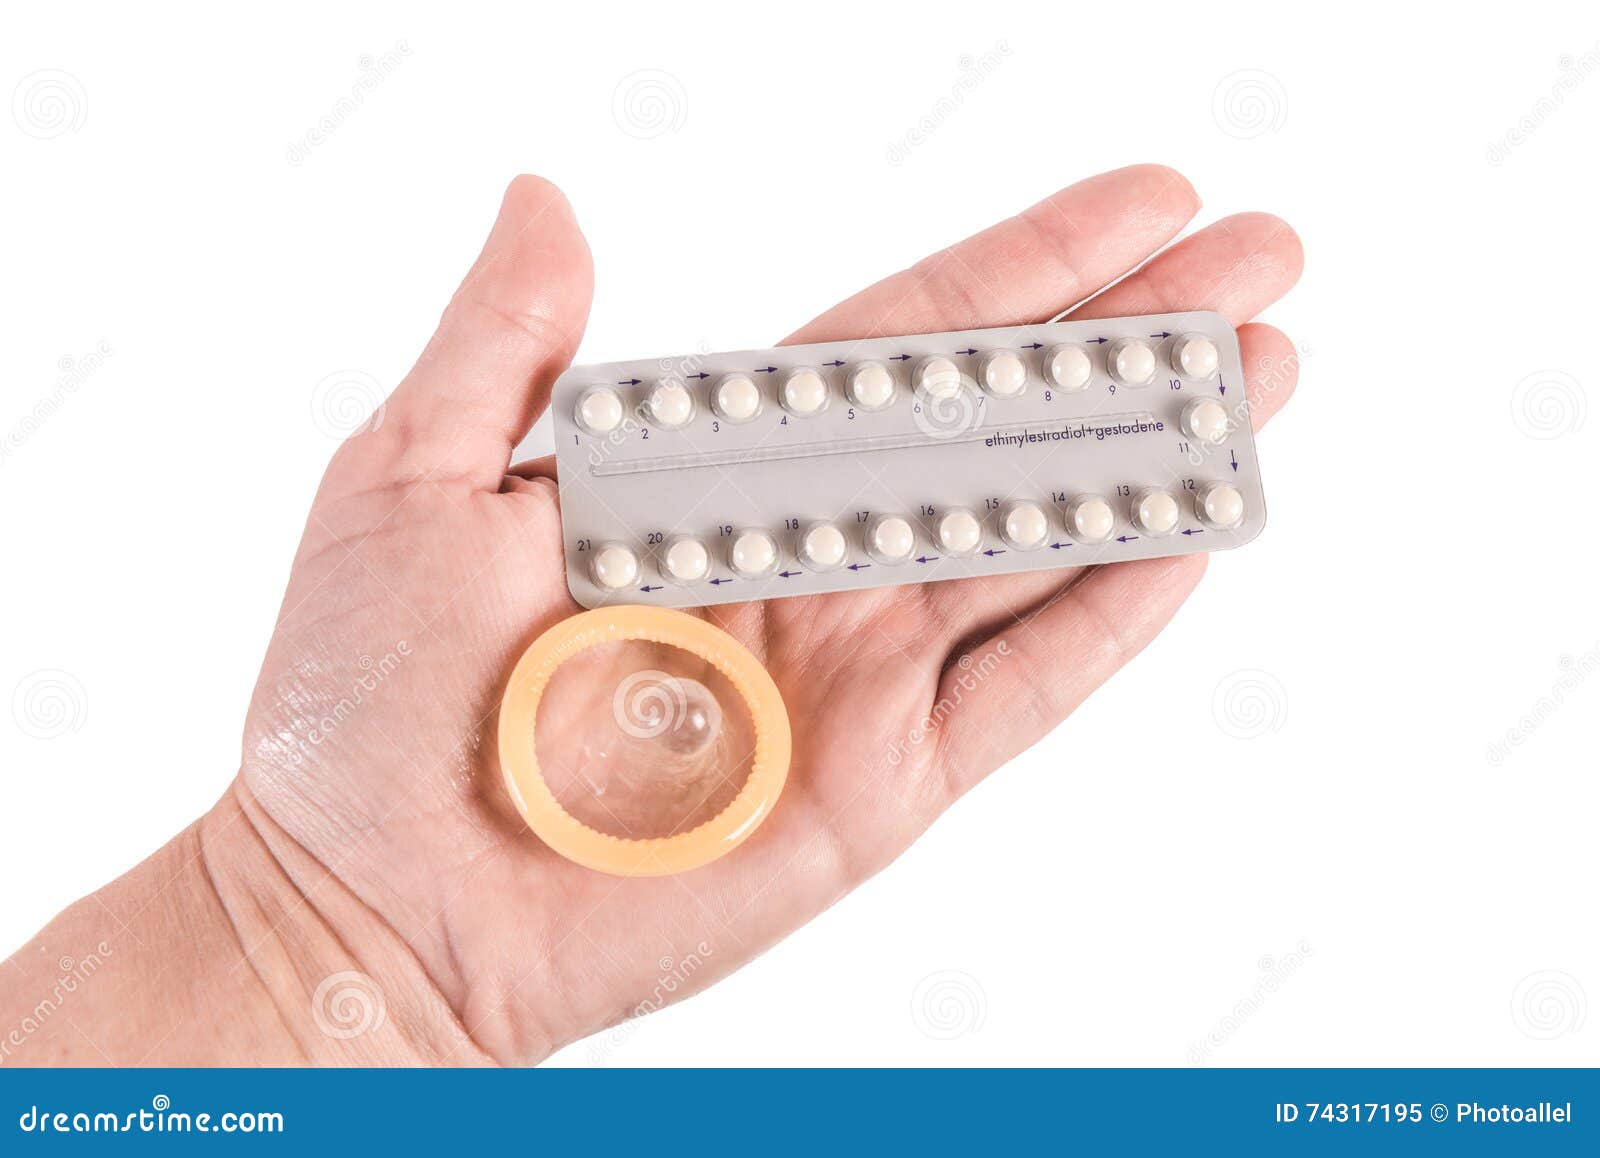 Перерыв после противозачаточных. Контрацептивы. Контрацептивы презервативы. Барьерные контрацептивы таблетки. Пероральные контрацептивы.